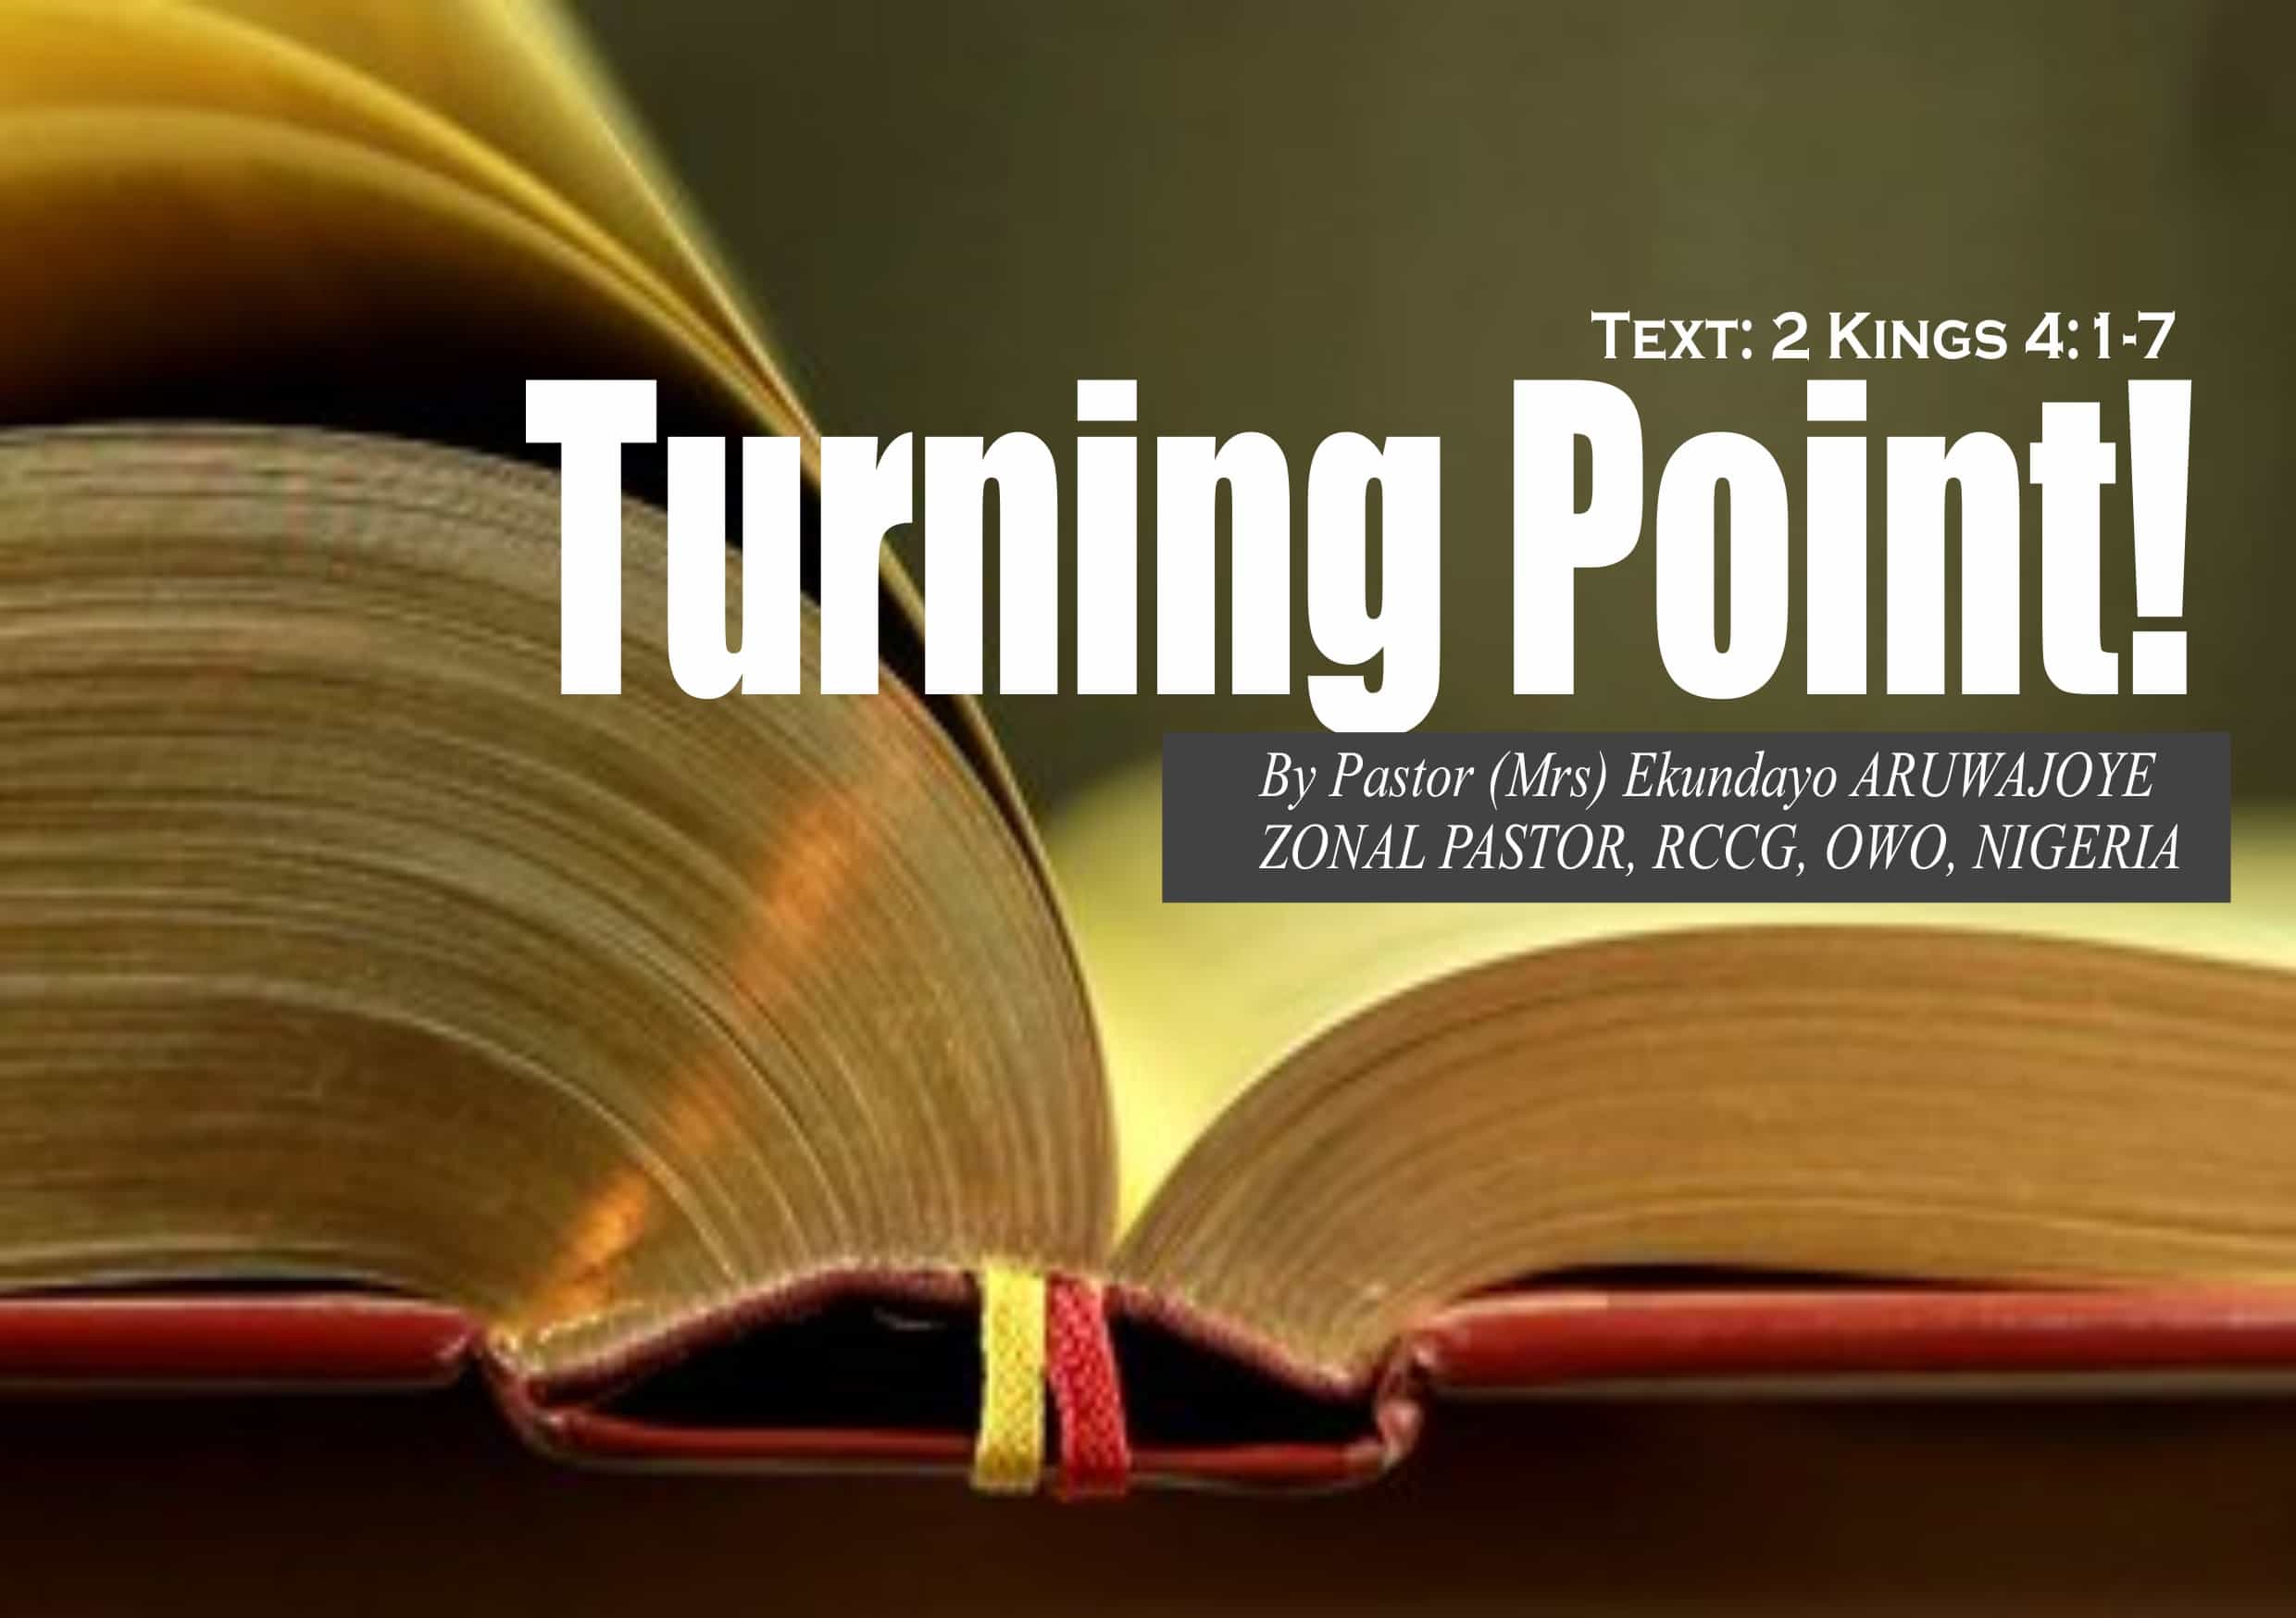 Turning Point, by Pastor (Mrs) Ekundayo Aruwajoye